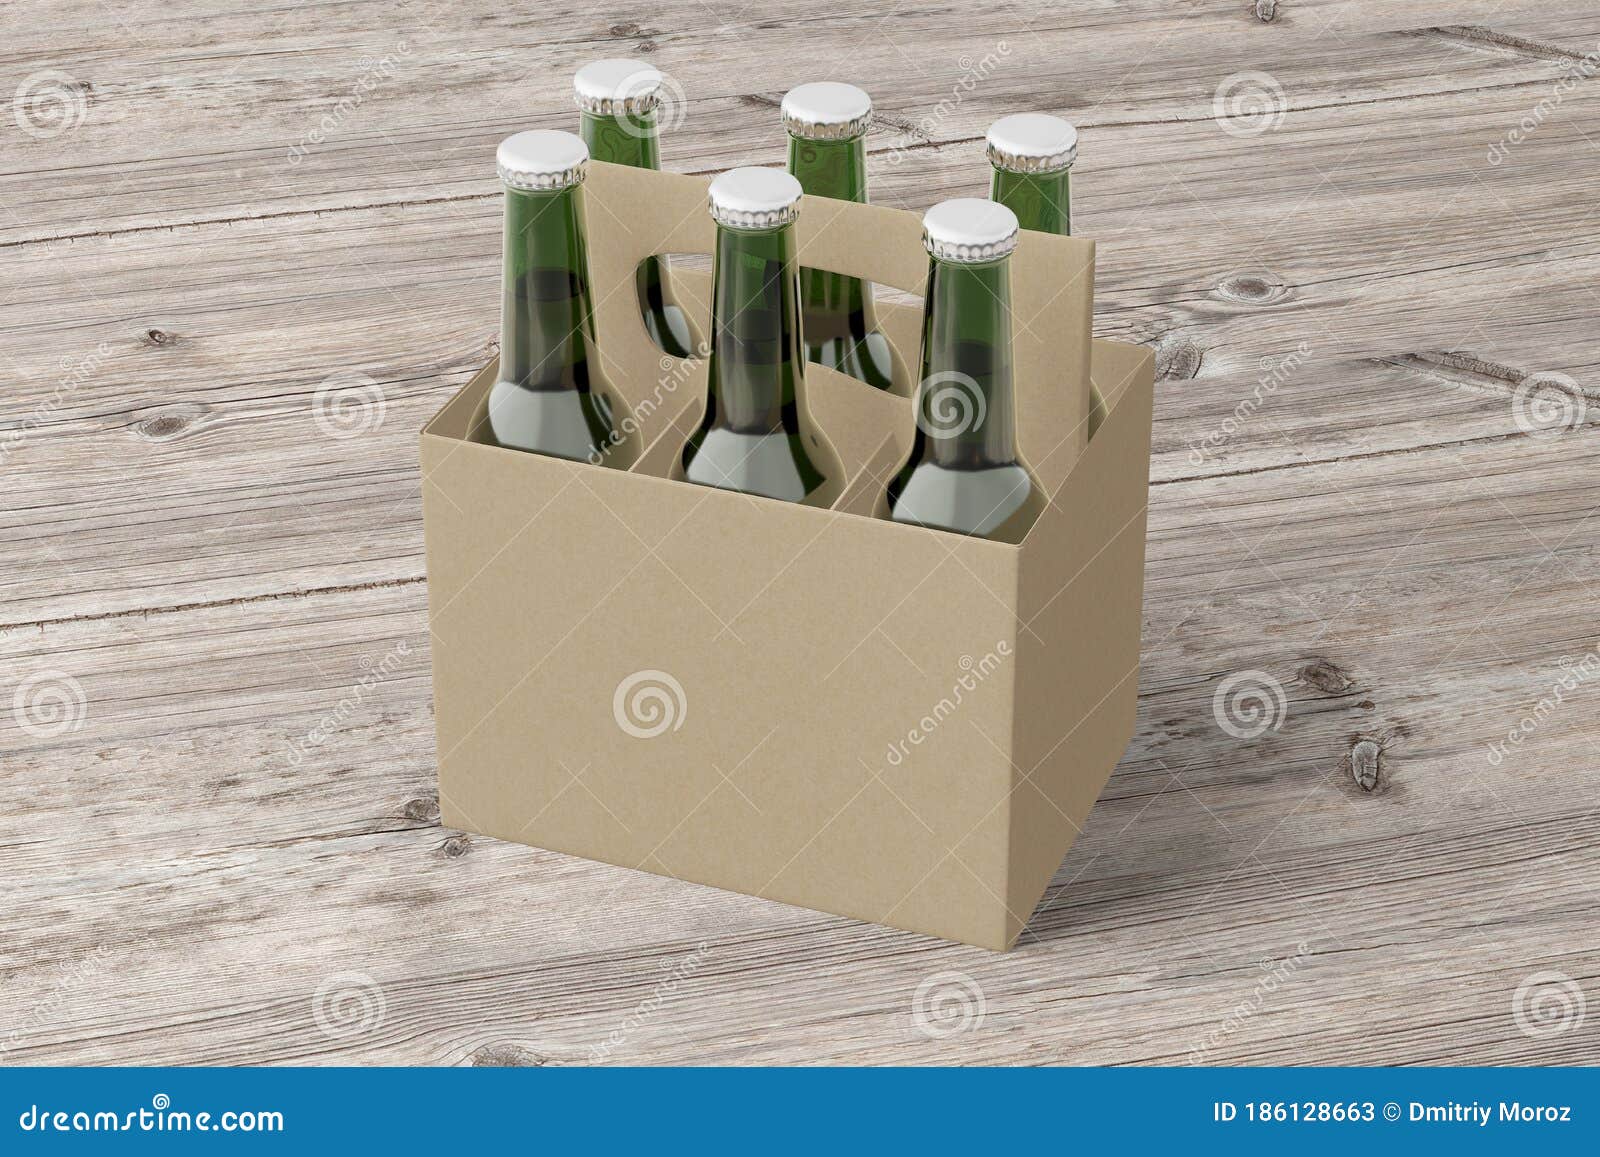 Blanco Bierverpakking Met Groene Flessen Stock Illustratie - Illustration  of doos, verpakking: 186128663